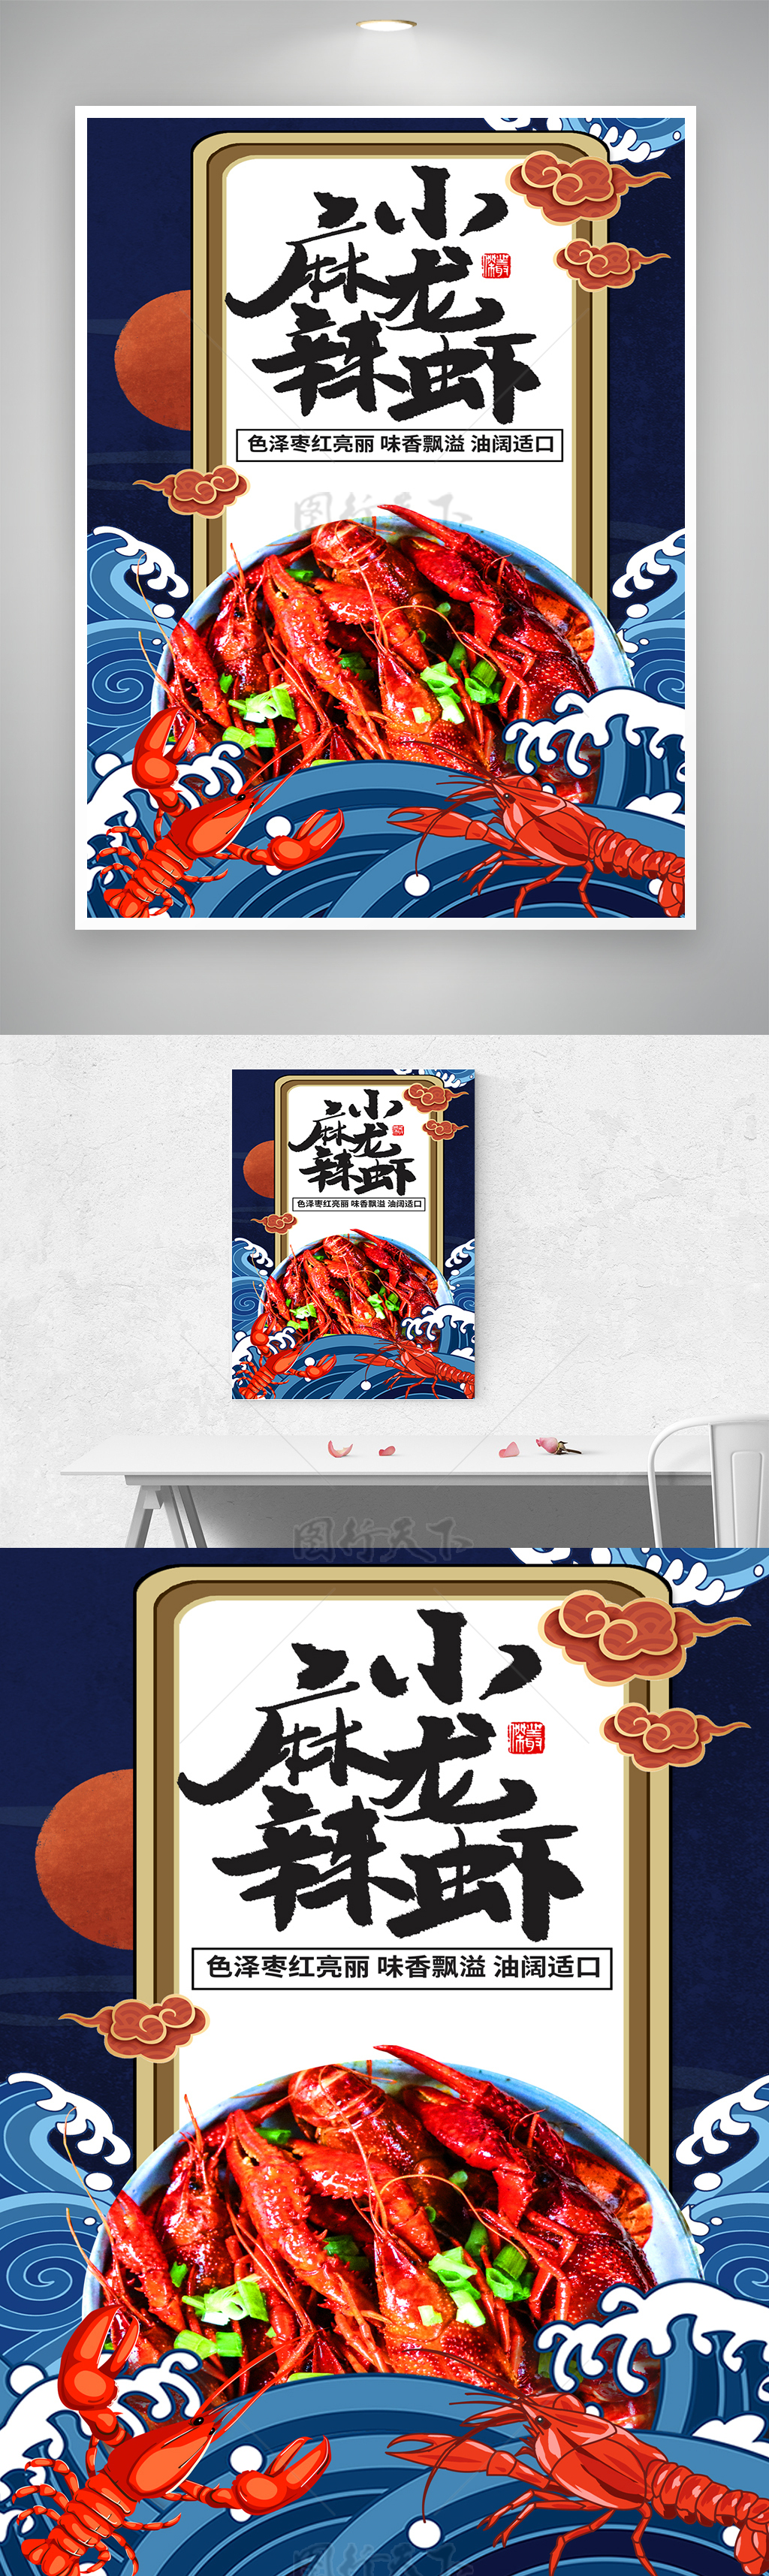 色泽枣红新鲜小龙虾美食海报